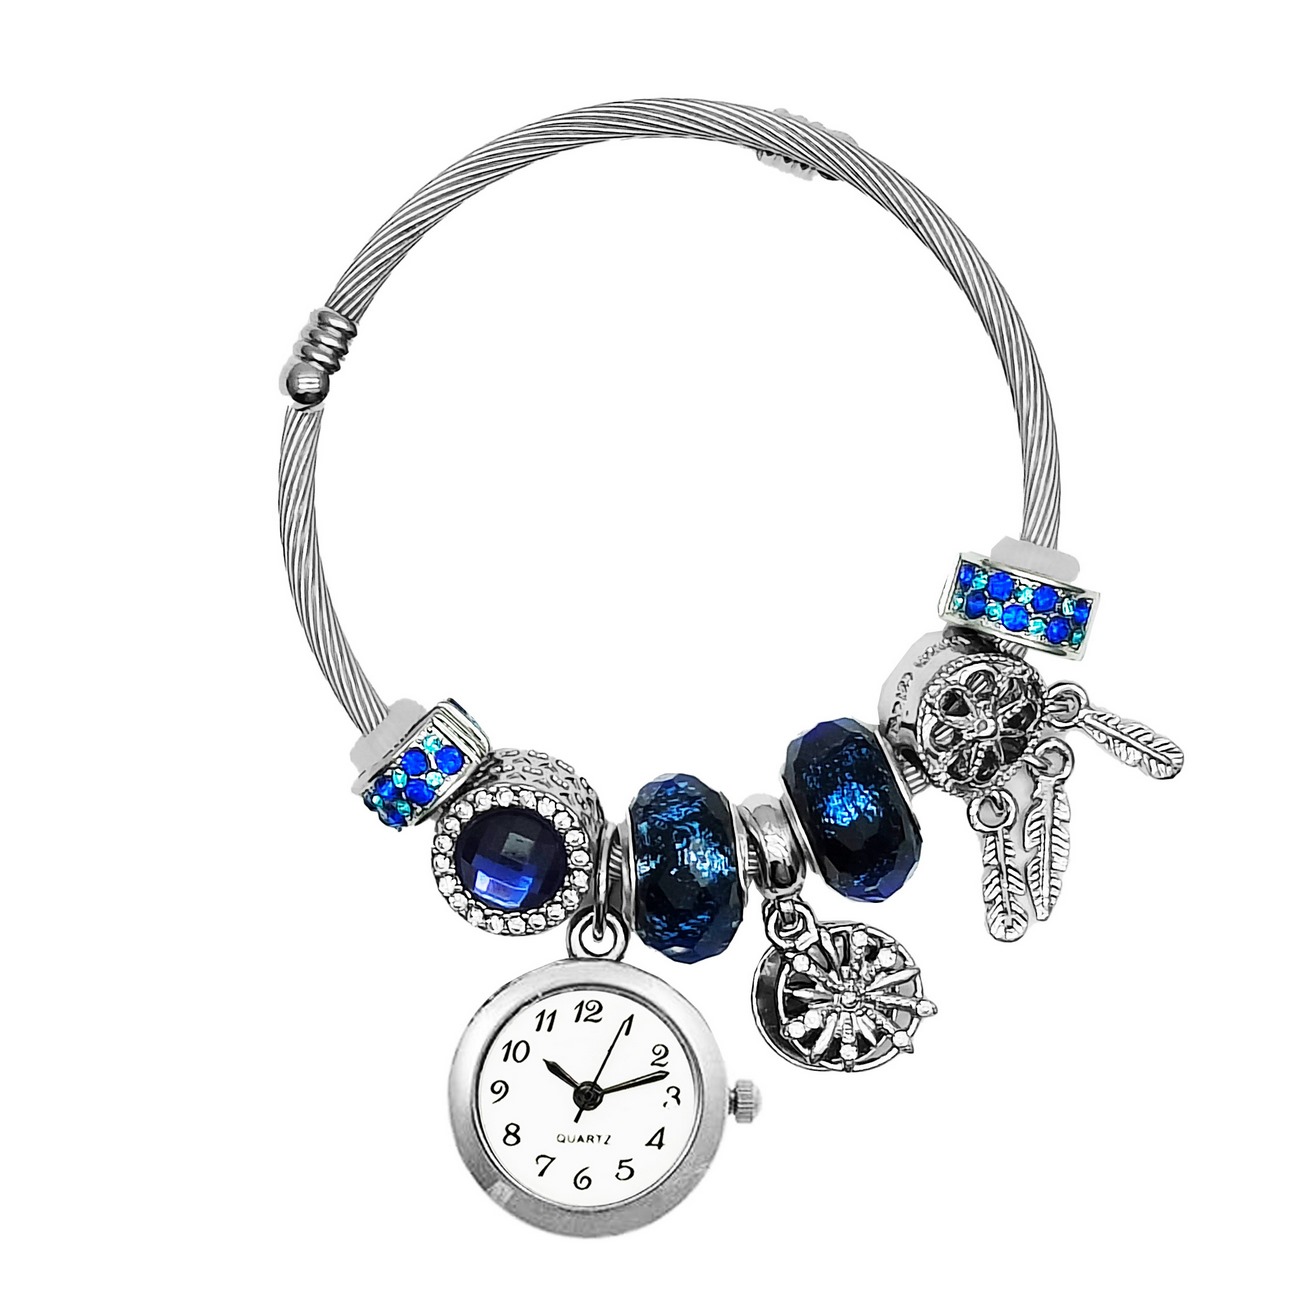 Reloj Mujer Dama Pulsera Acero Atrapasueños Azul + Estuche 